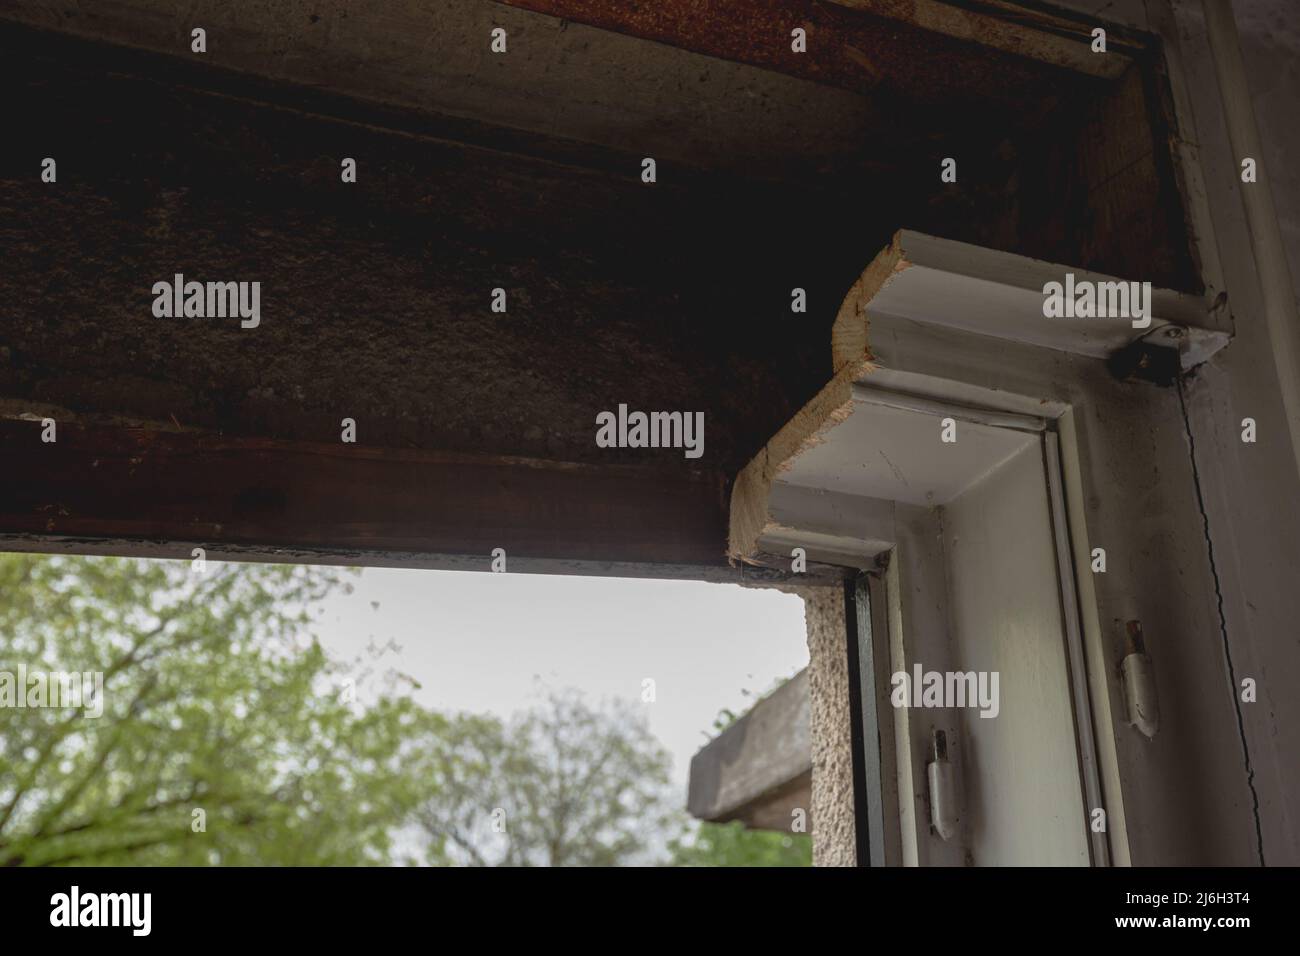 Alte Holzfenster, die aus einem alten Haus herausgeschnitten wurden, machen Platz, um moderne dreischichtige Isolierfenster zu installieren. Sichtbares Profil des alten Holzrahmens Stockfoto